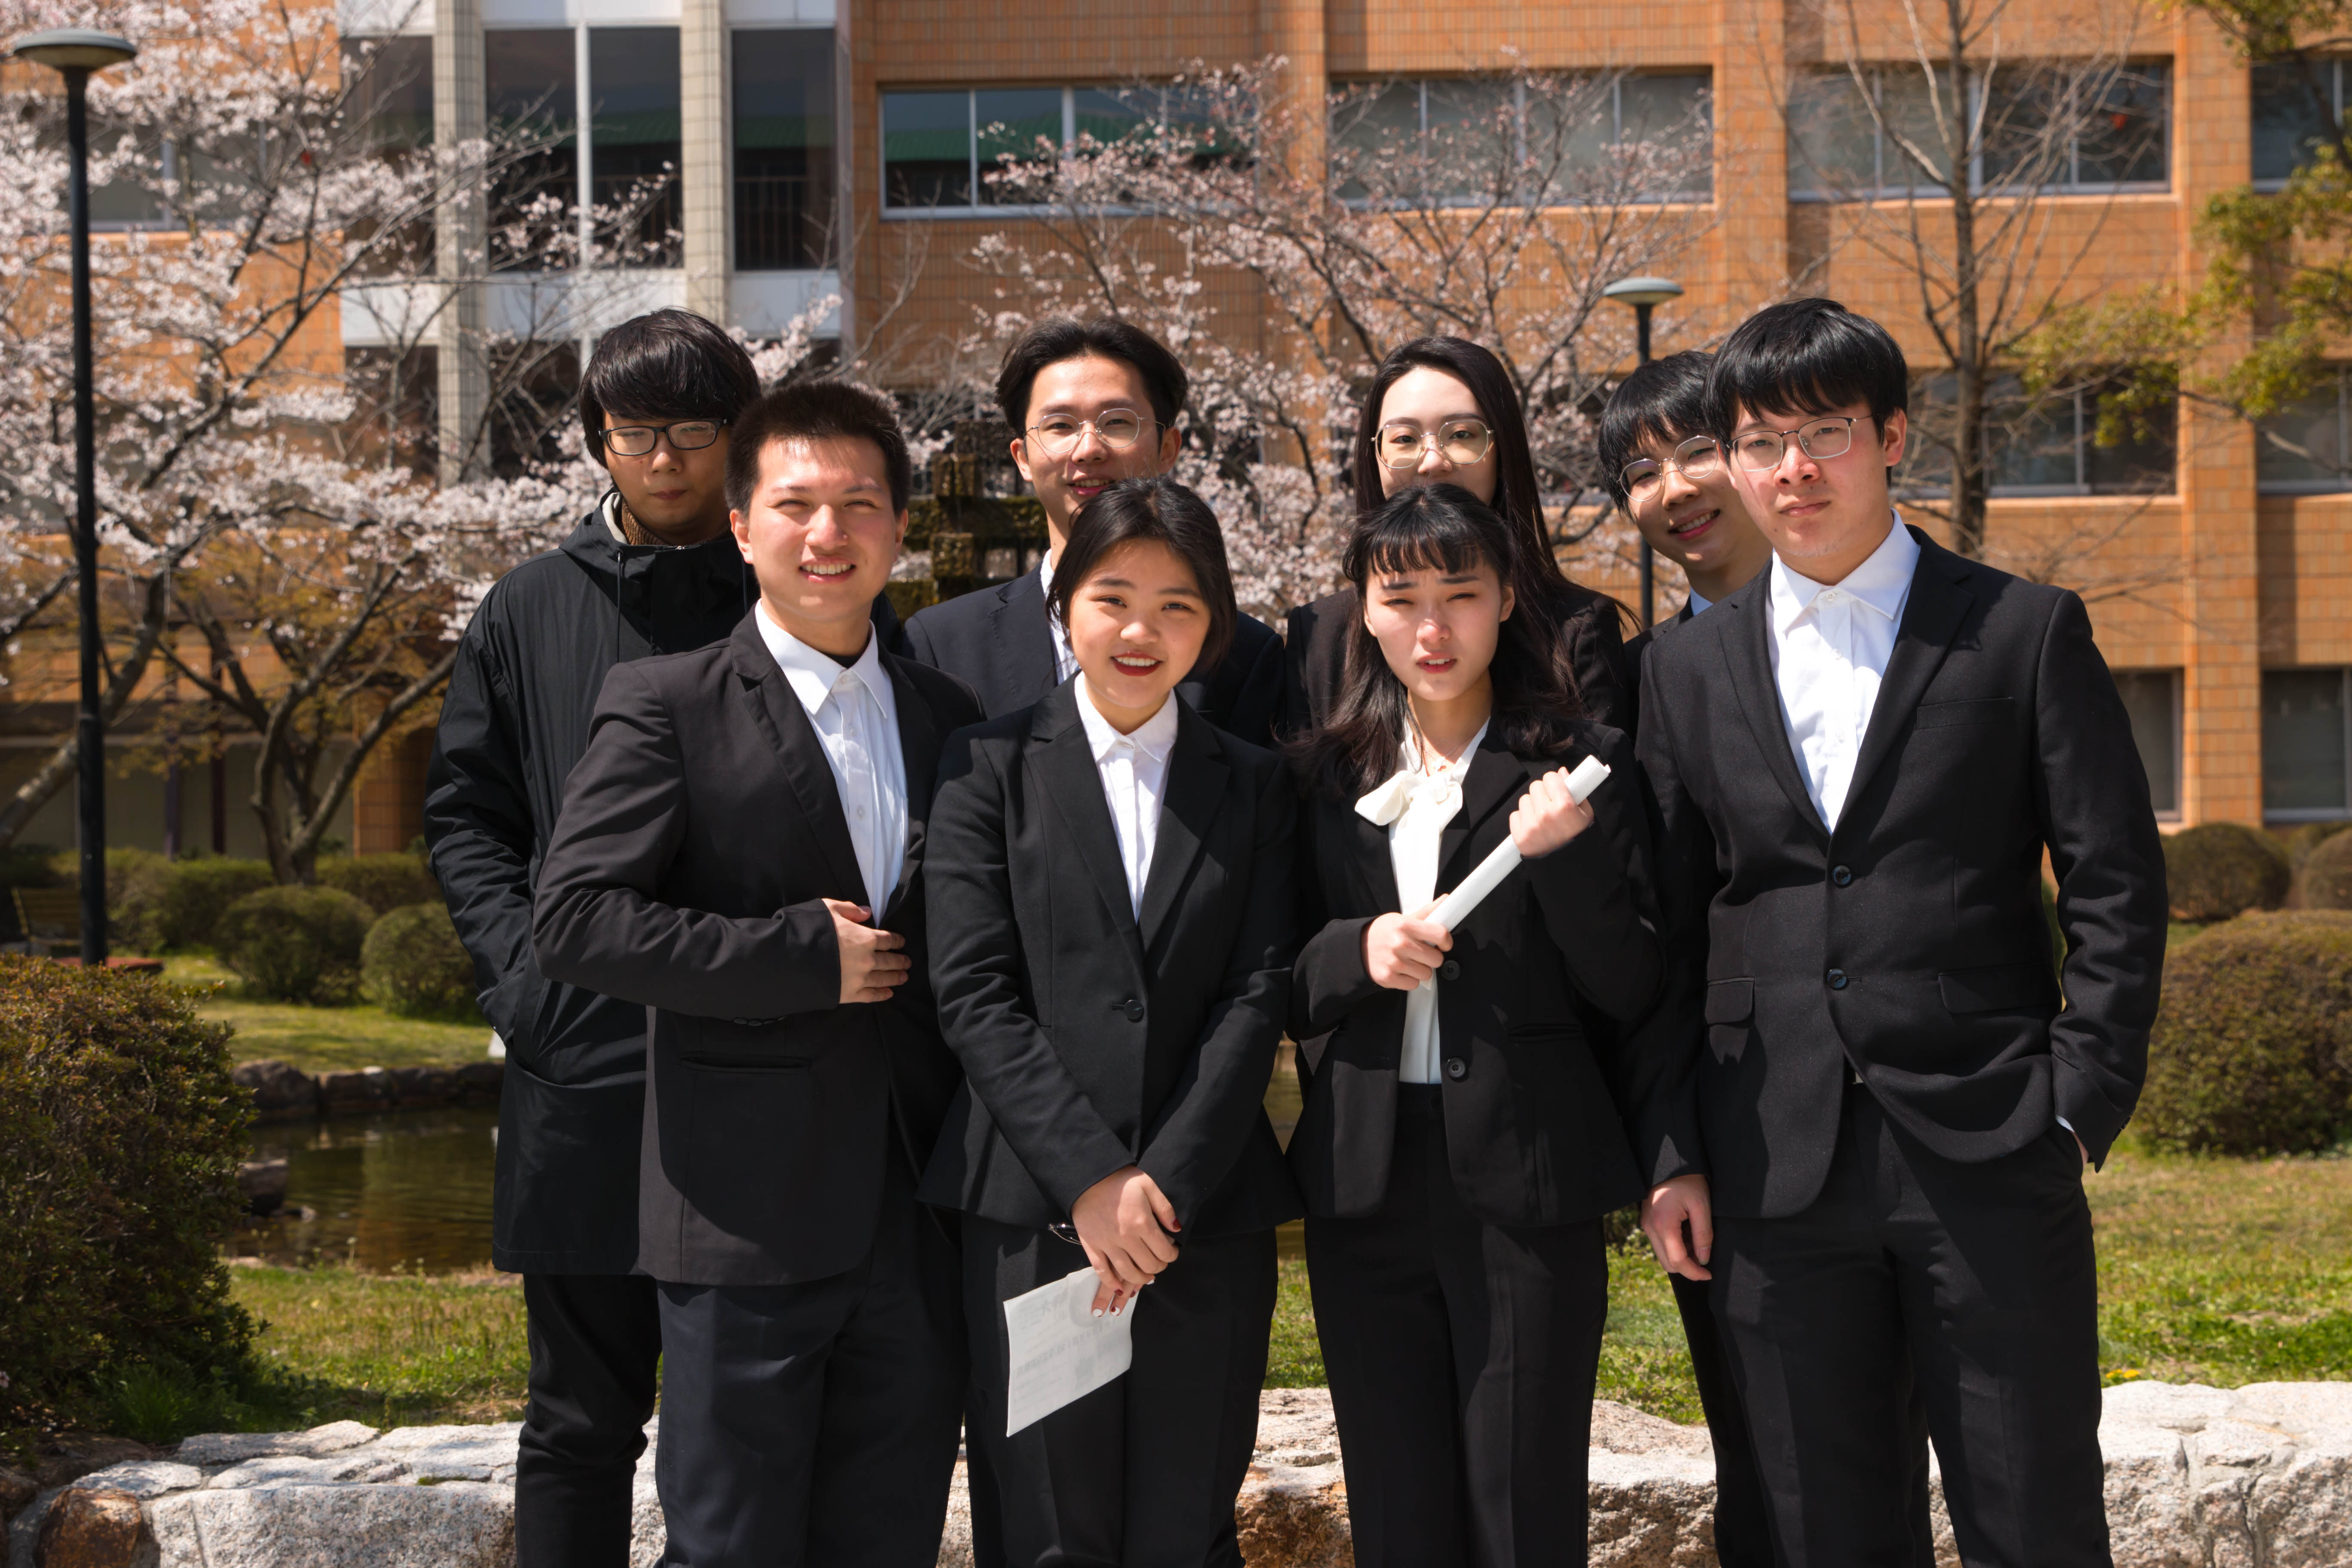 2019年3月底,应用东语学院的21名赴日留学生顺利抵达日本冈山商科大学